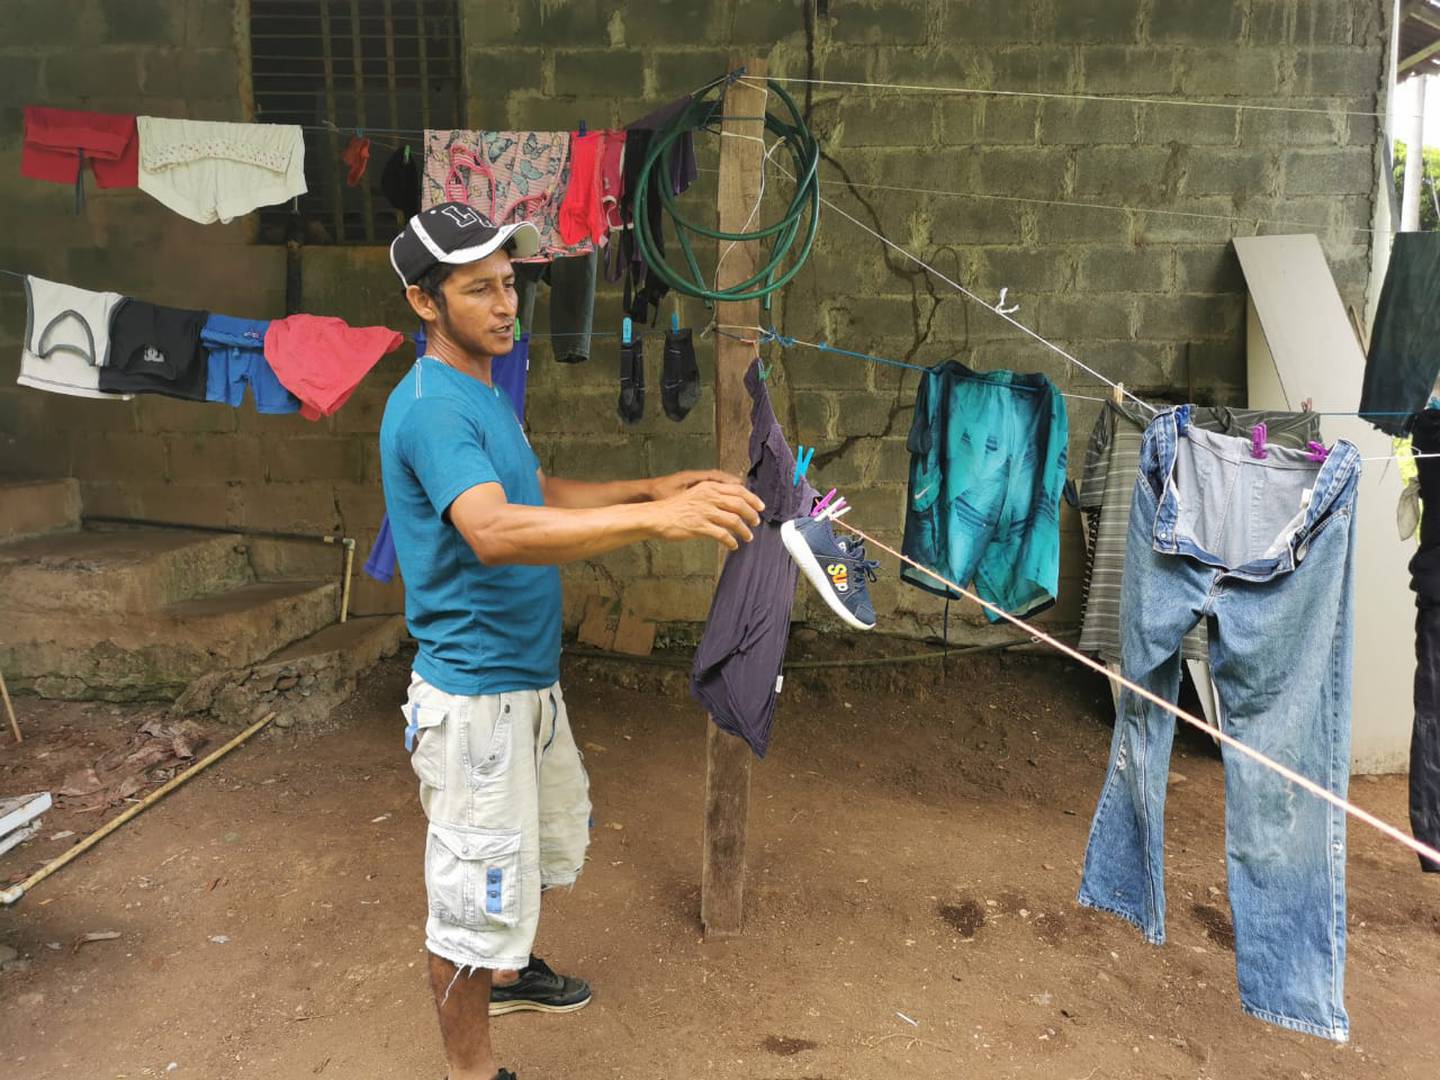 El martes Nelson Estrada, vecino de El Tigre, enfrentó a machetazos a Castro, quien lo despojó del celular, dinero y ropa que estaba en el tendedero. Foto: Reiner Montero.